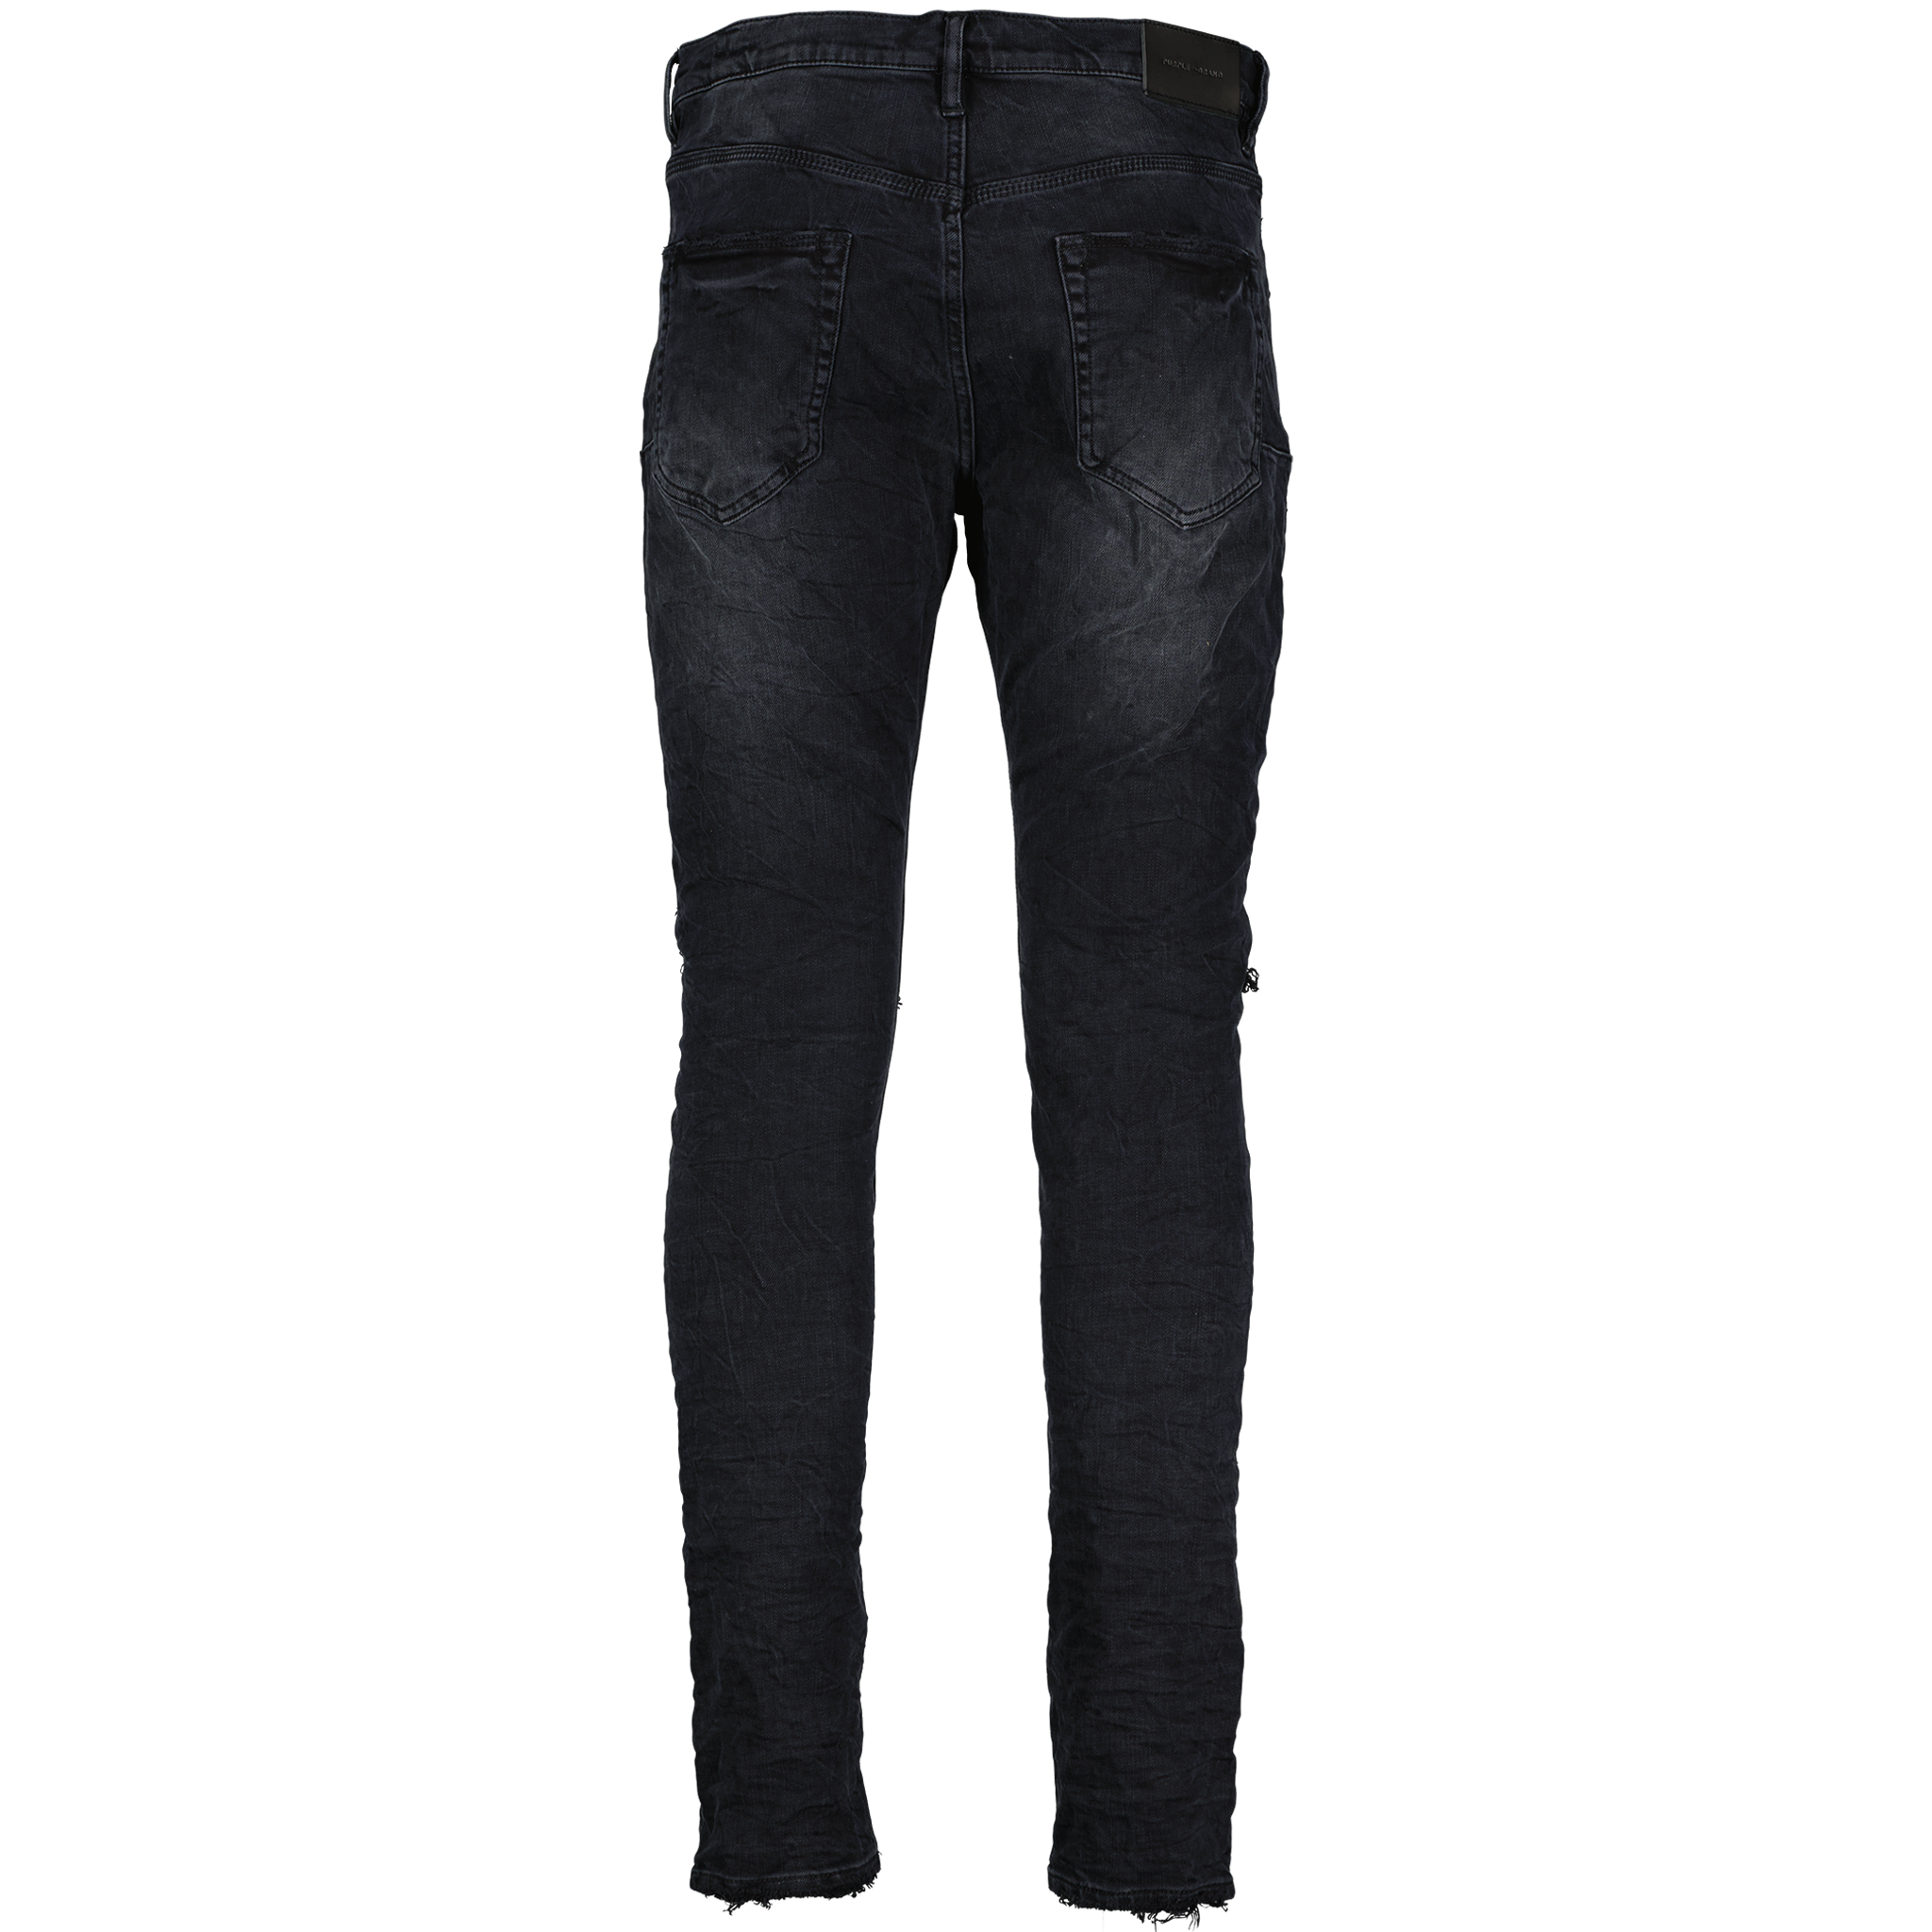 Black Wash Blowout Jeans